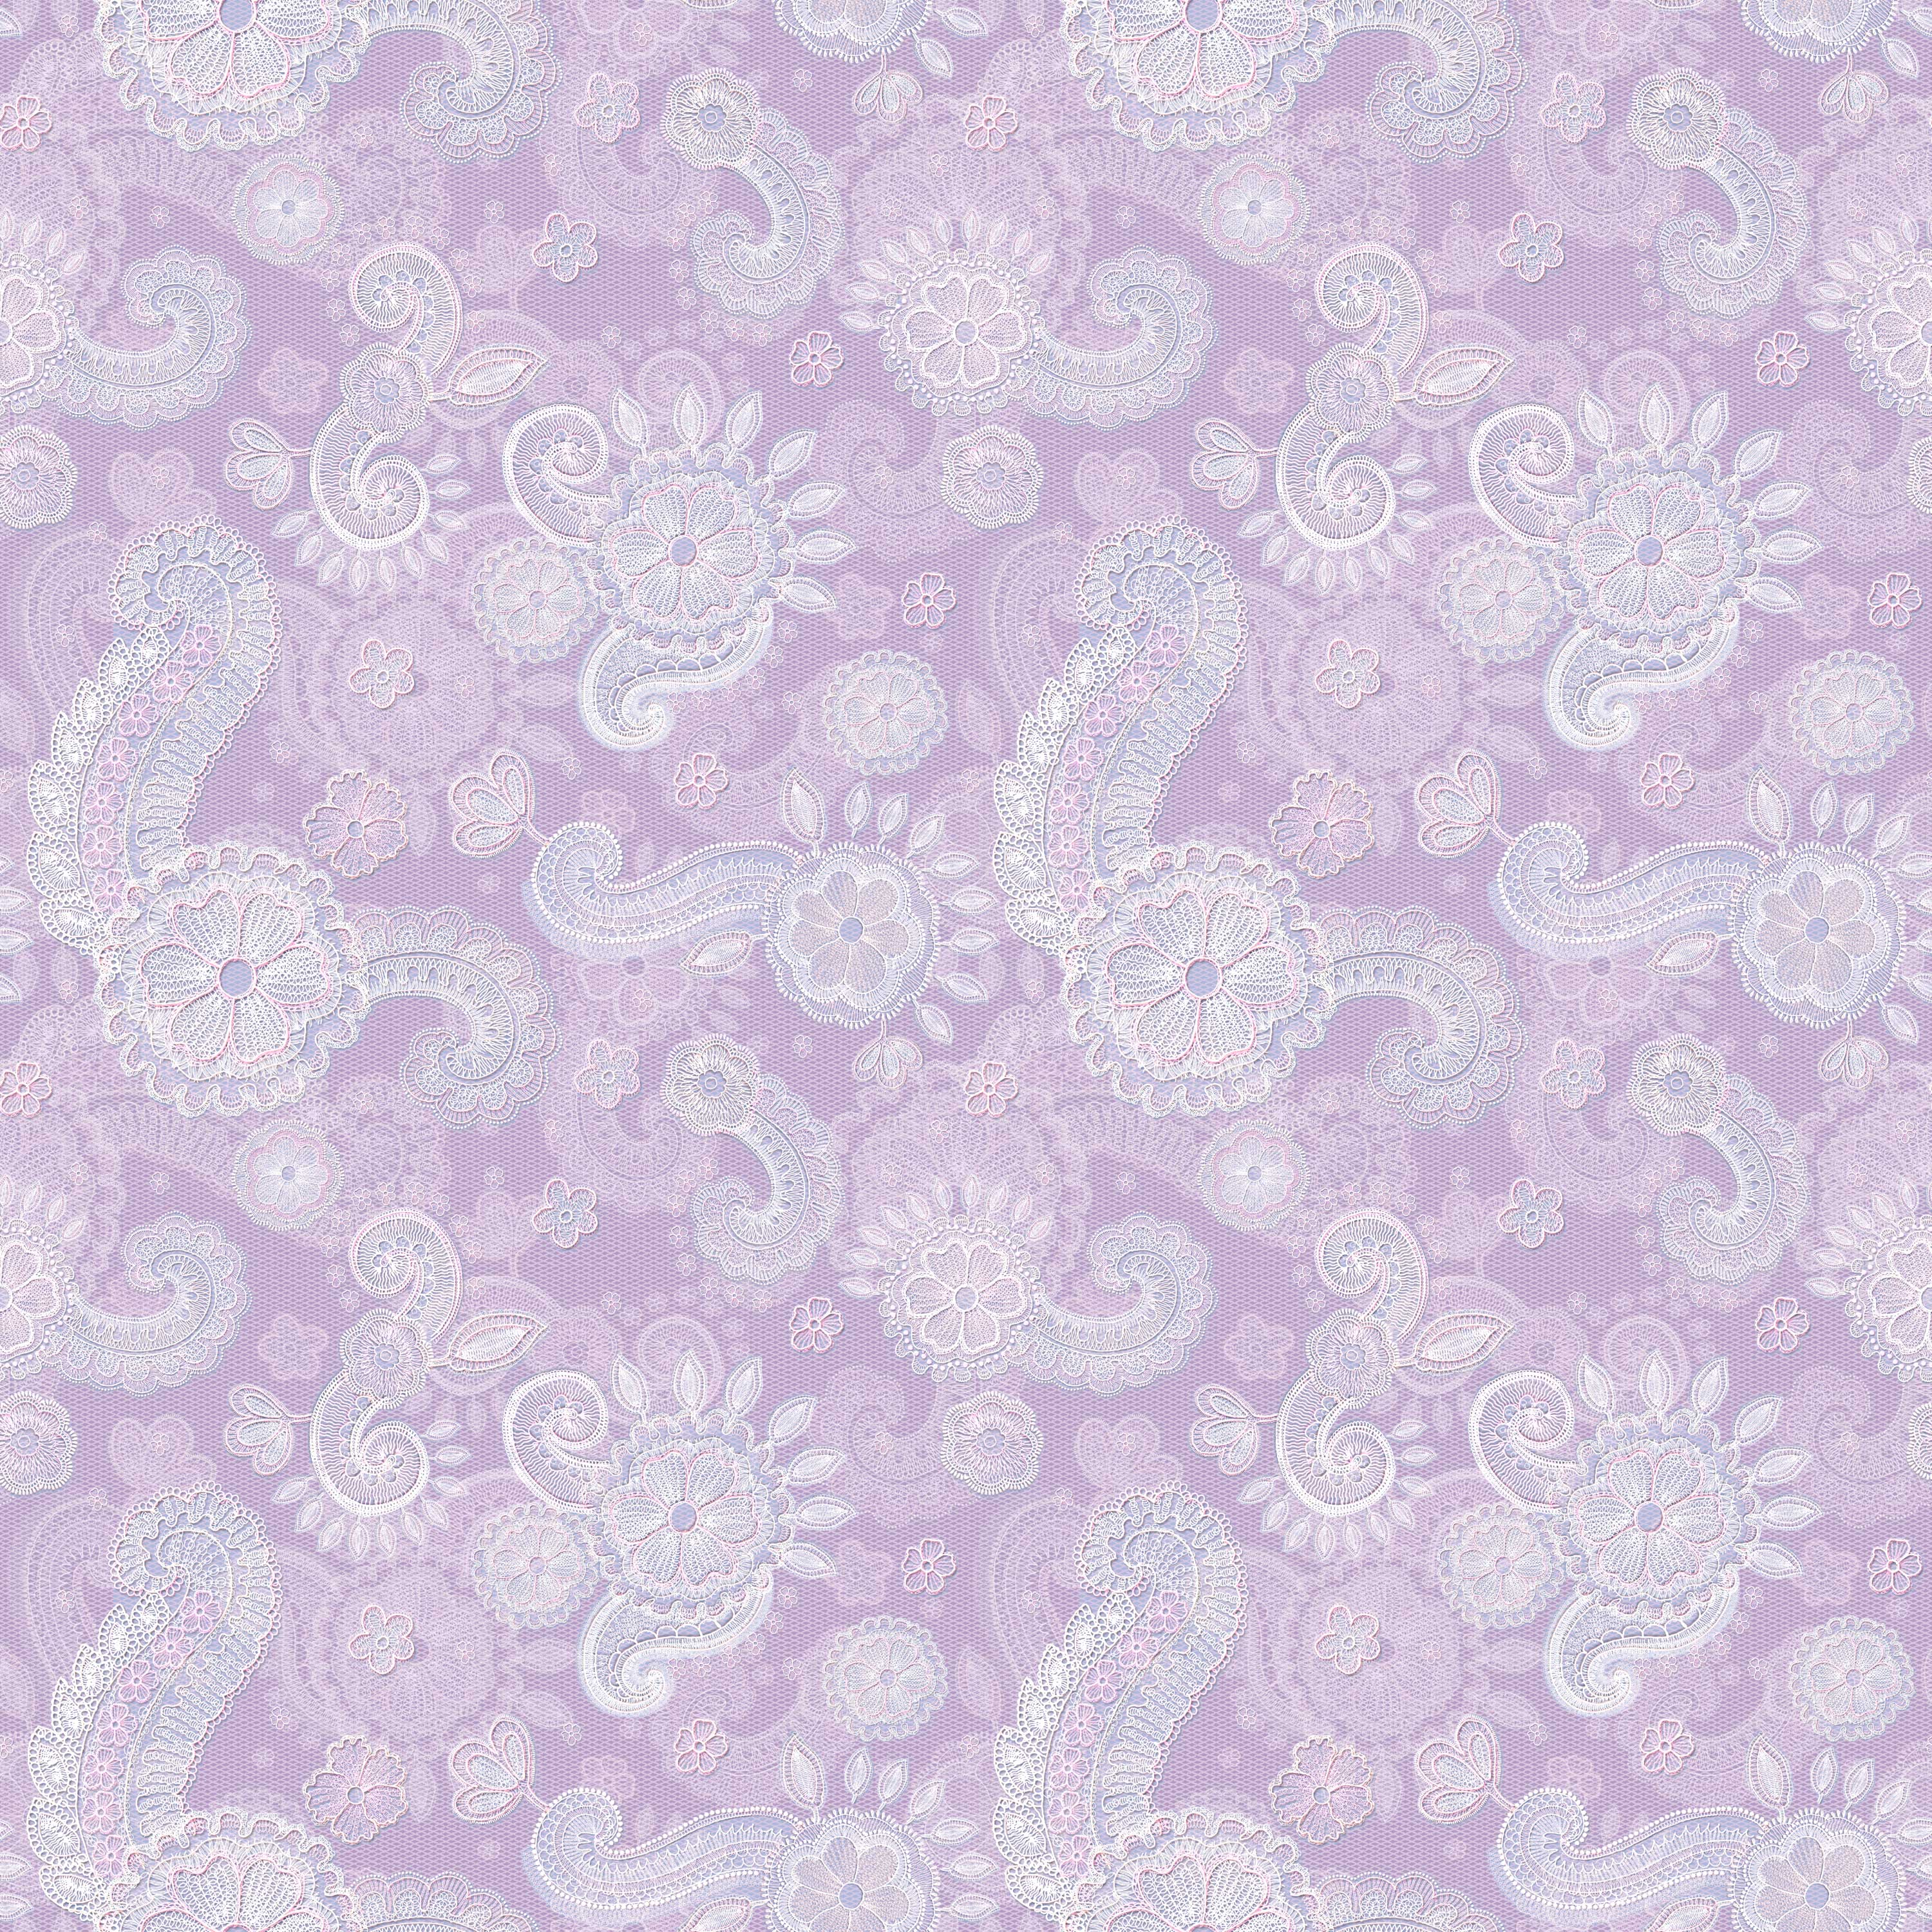 壁紙 背景イラスト 花の模様 柄 パターン No 055 紫 レース生地